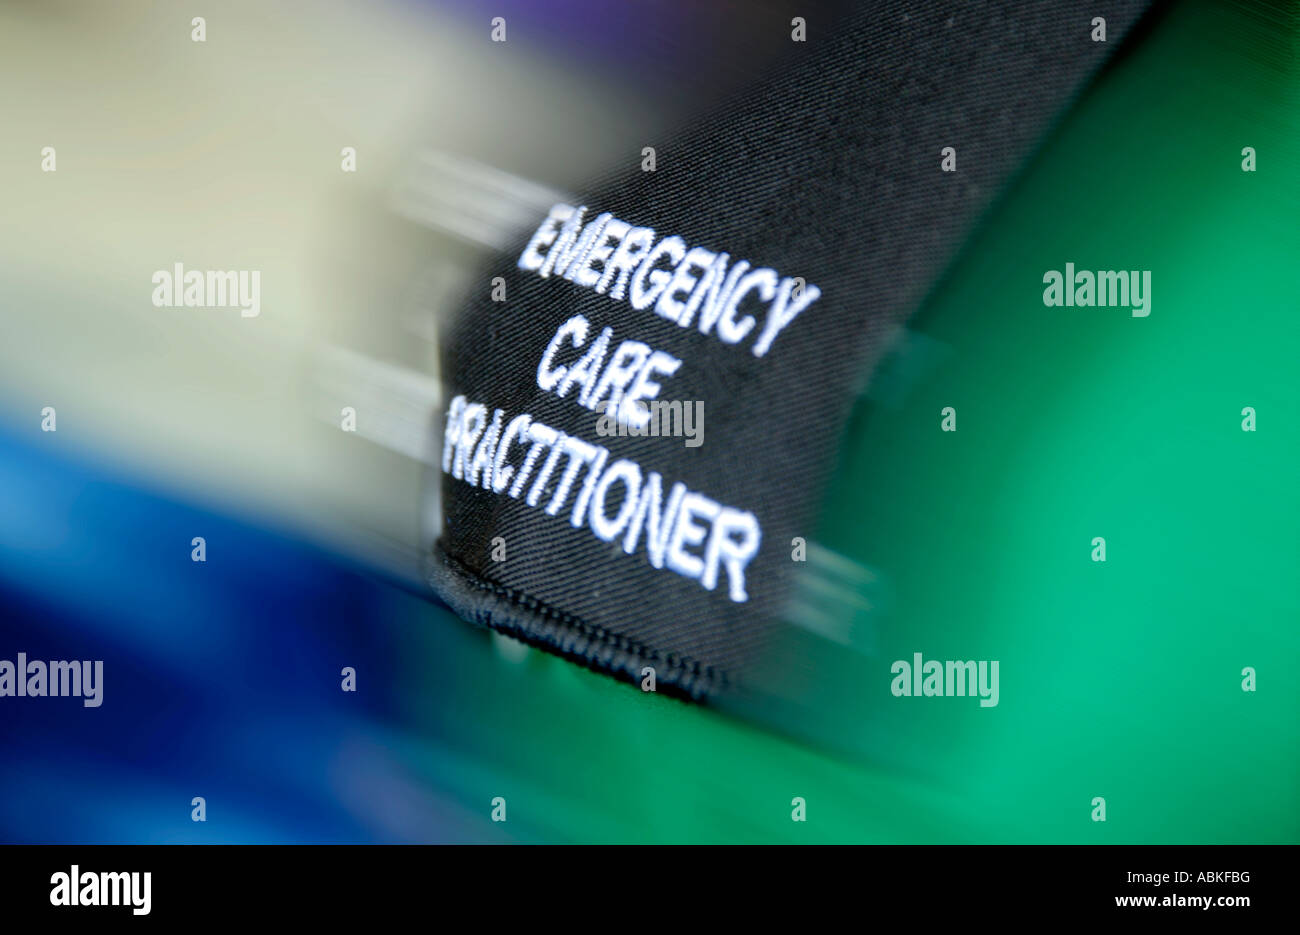 Emergency Services Sanitäter Care Practitioner epaulette Stockfoto